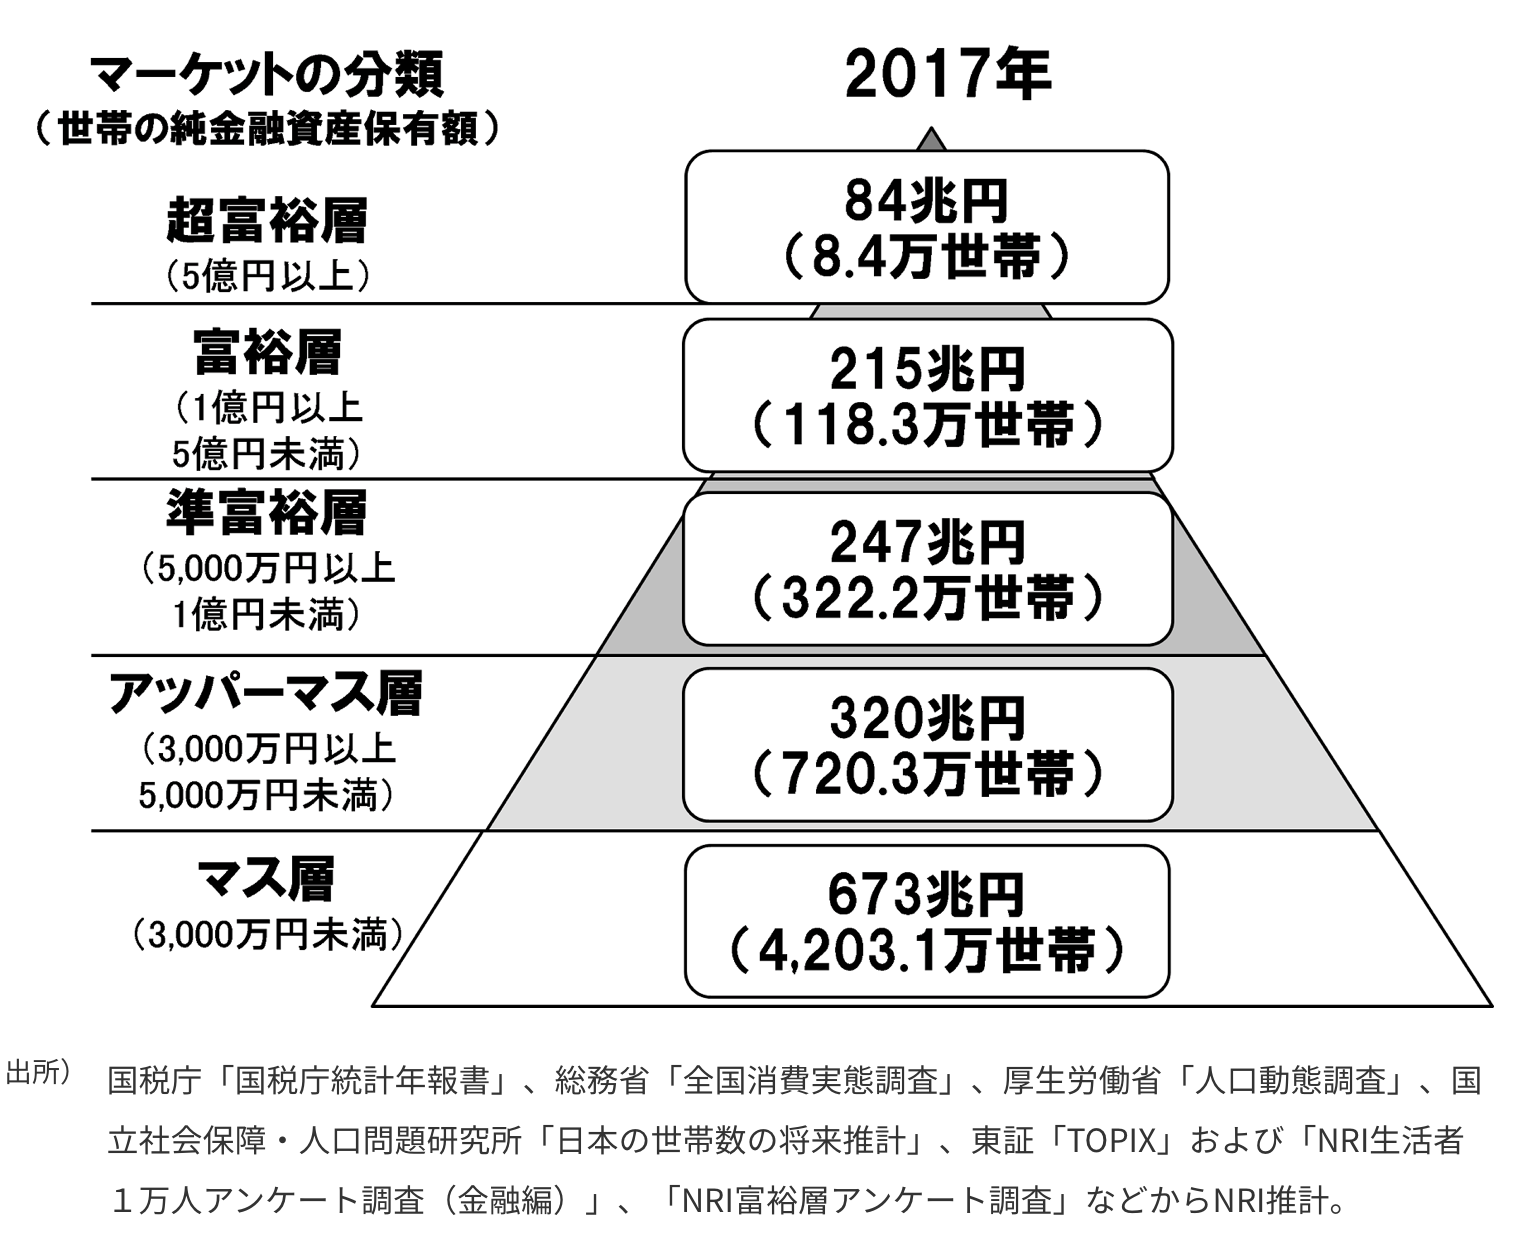 日本人の5000万円以上の家計の割合